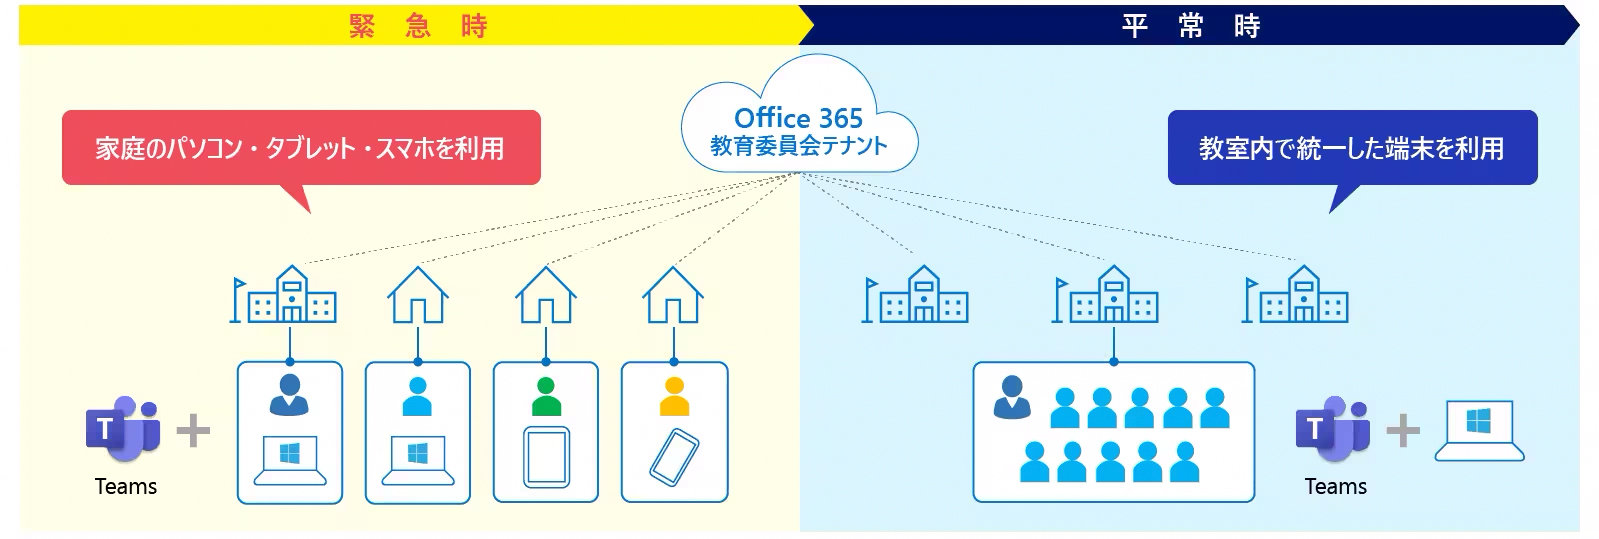 緊急時  平常時  家庭のパソコン·タブレット·スマホを利用  Office 365 教育委員会テナント  教室内で統一した端末を利用  Teams